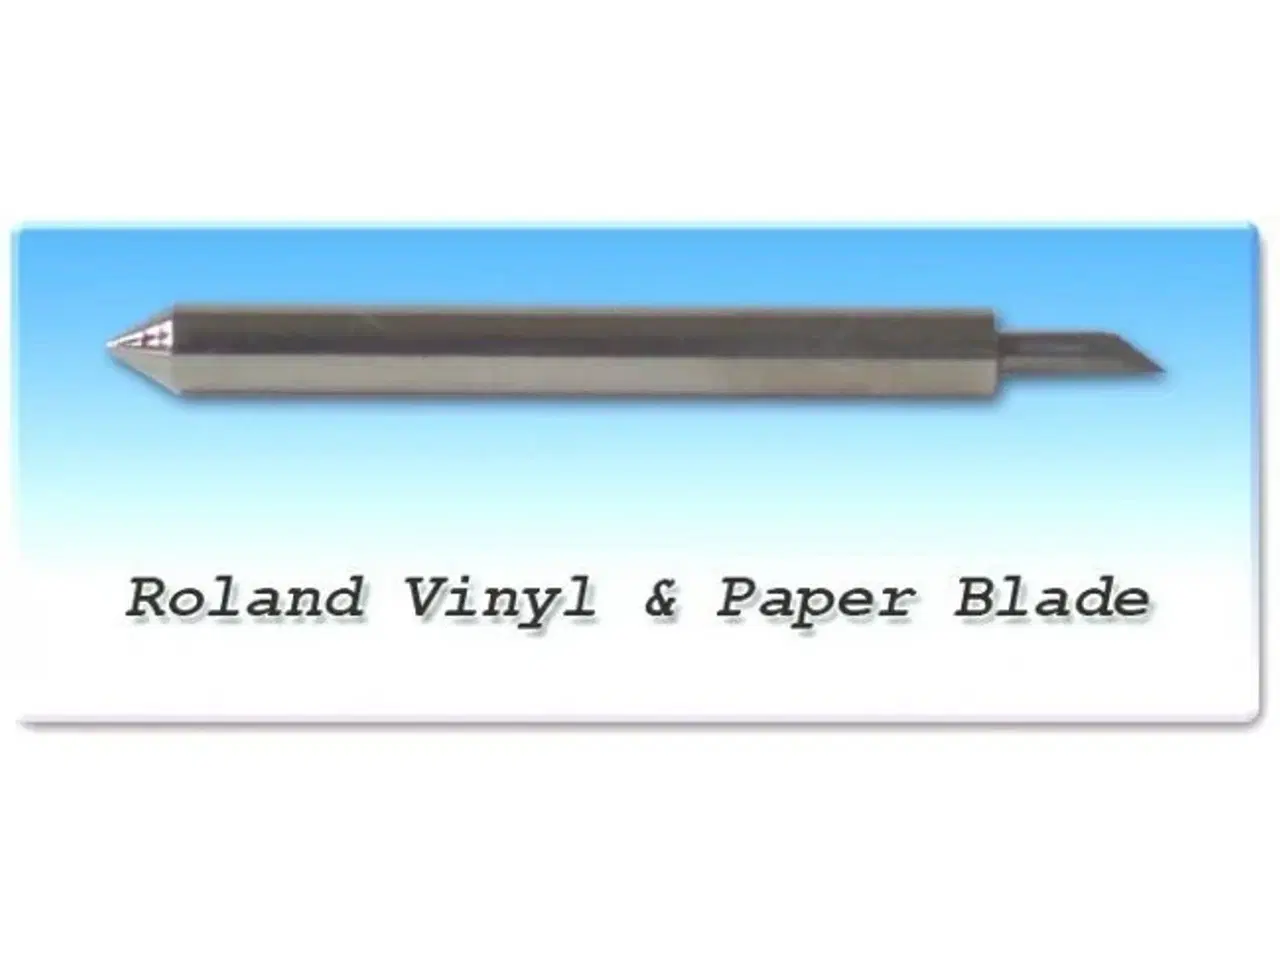 Billede 1 - 5 stk. knivpakke, Roland - Redsail folie og papir knive 50º, offset 0.25mm